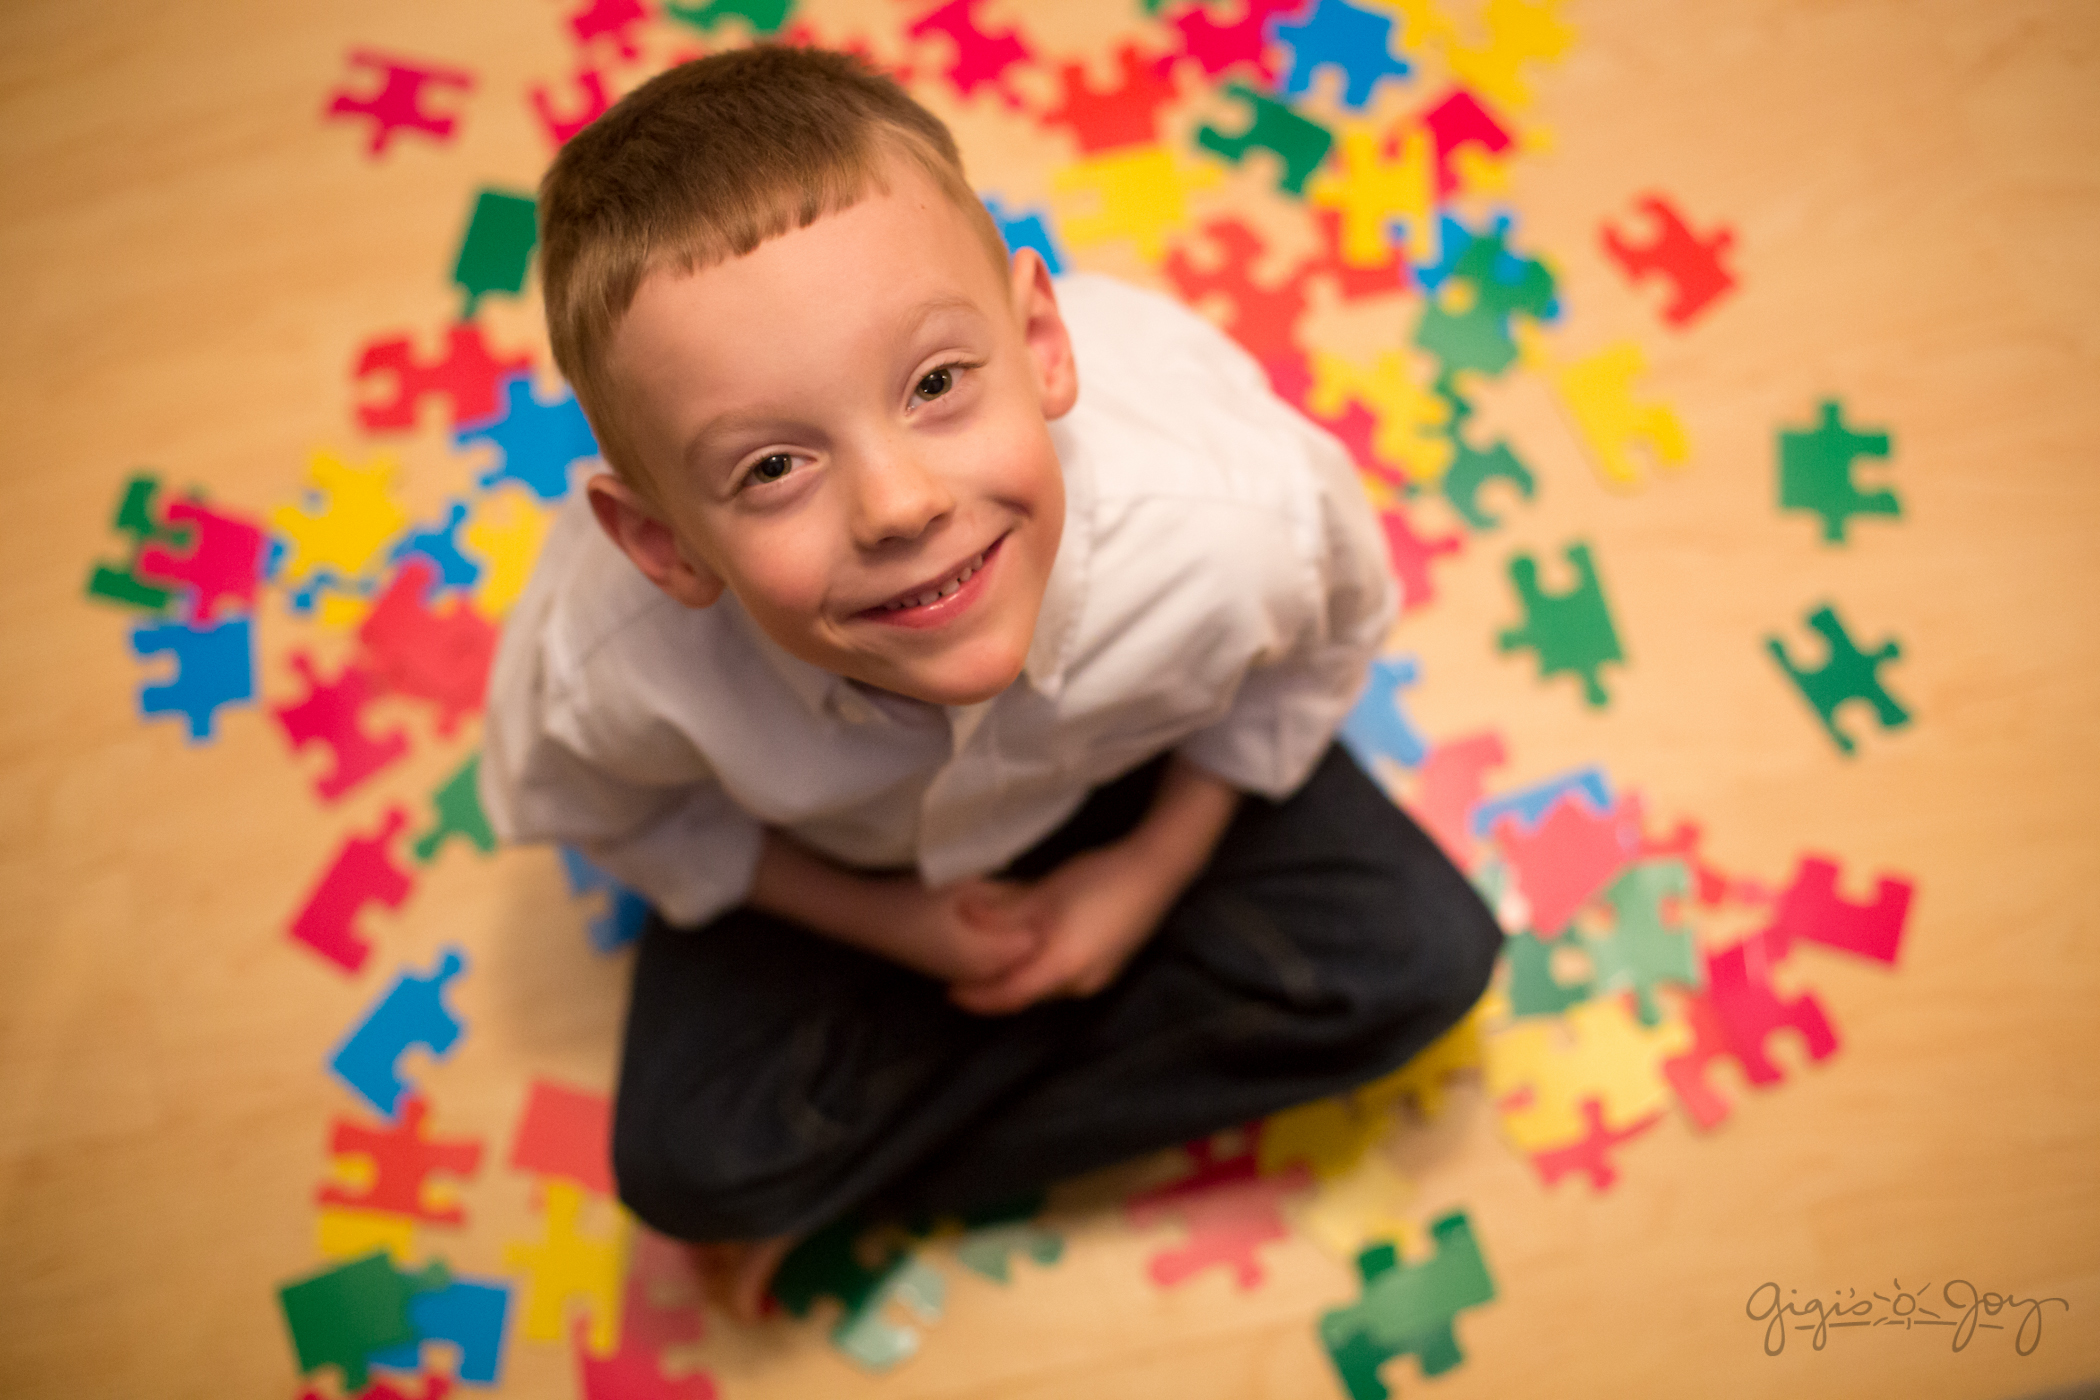 autizmus autista autizmus spektrumzavar nagydologsprint nevelés fejlesztés